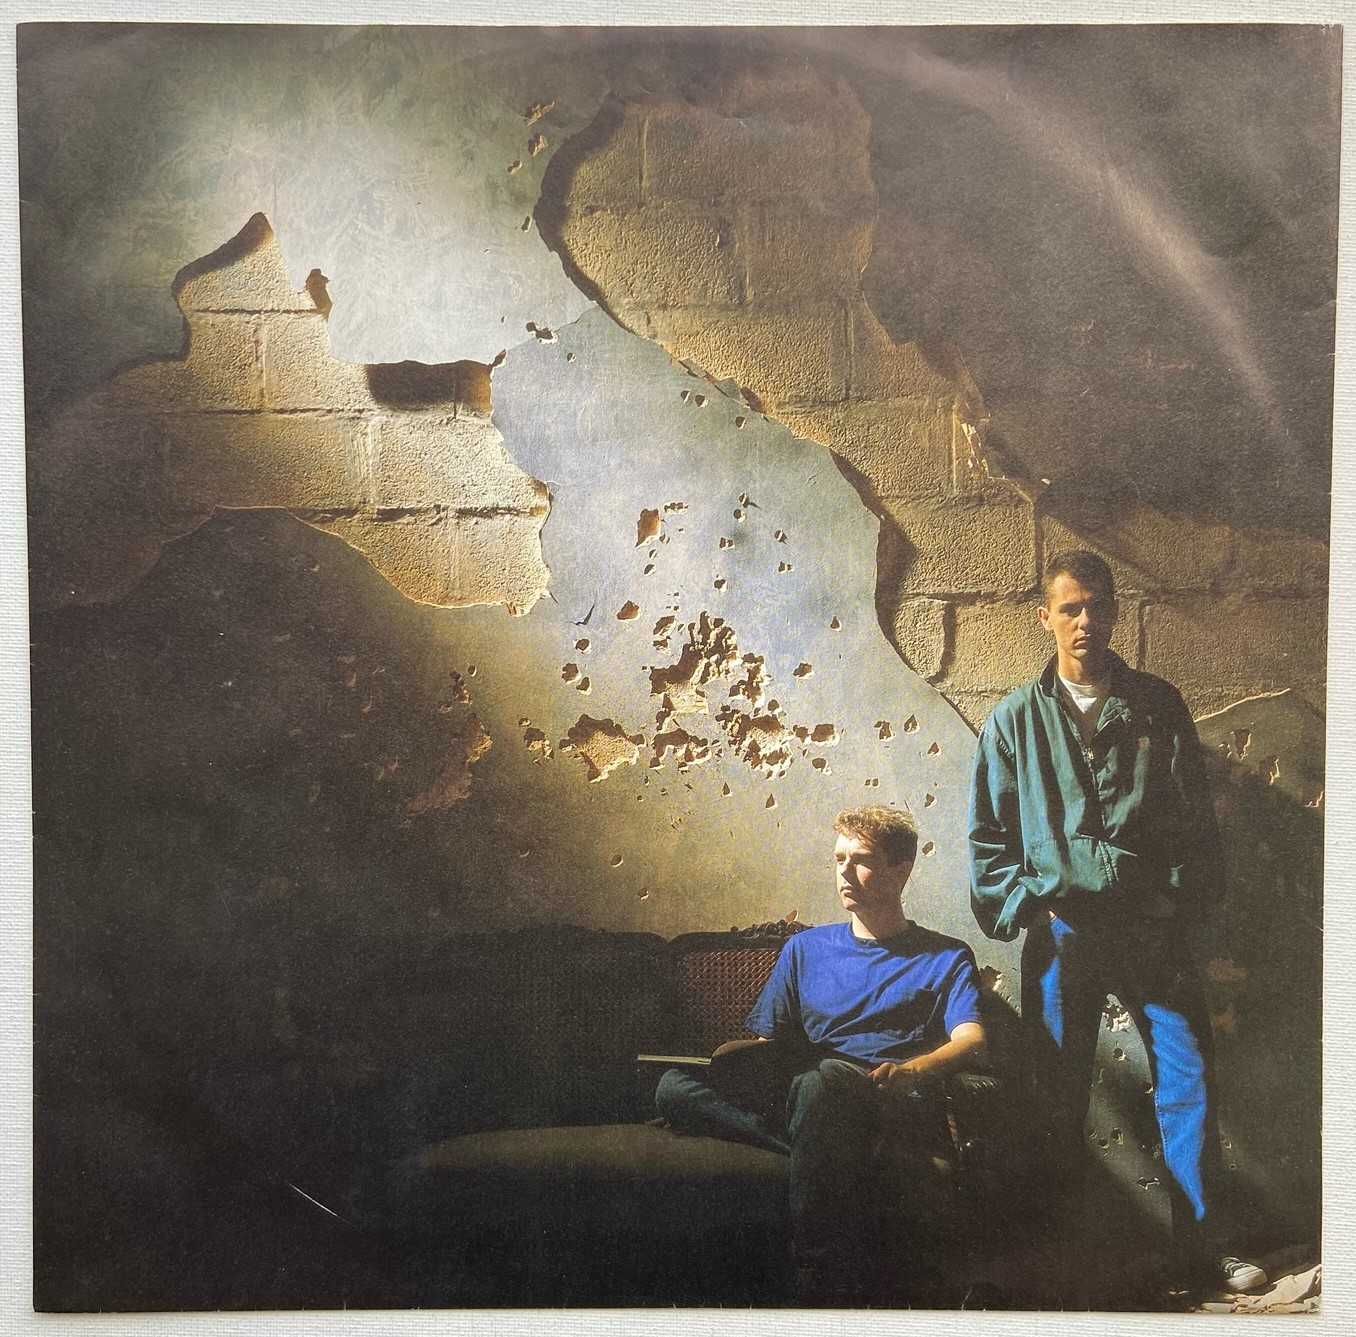 Pet Shop Boys – Actually